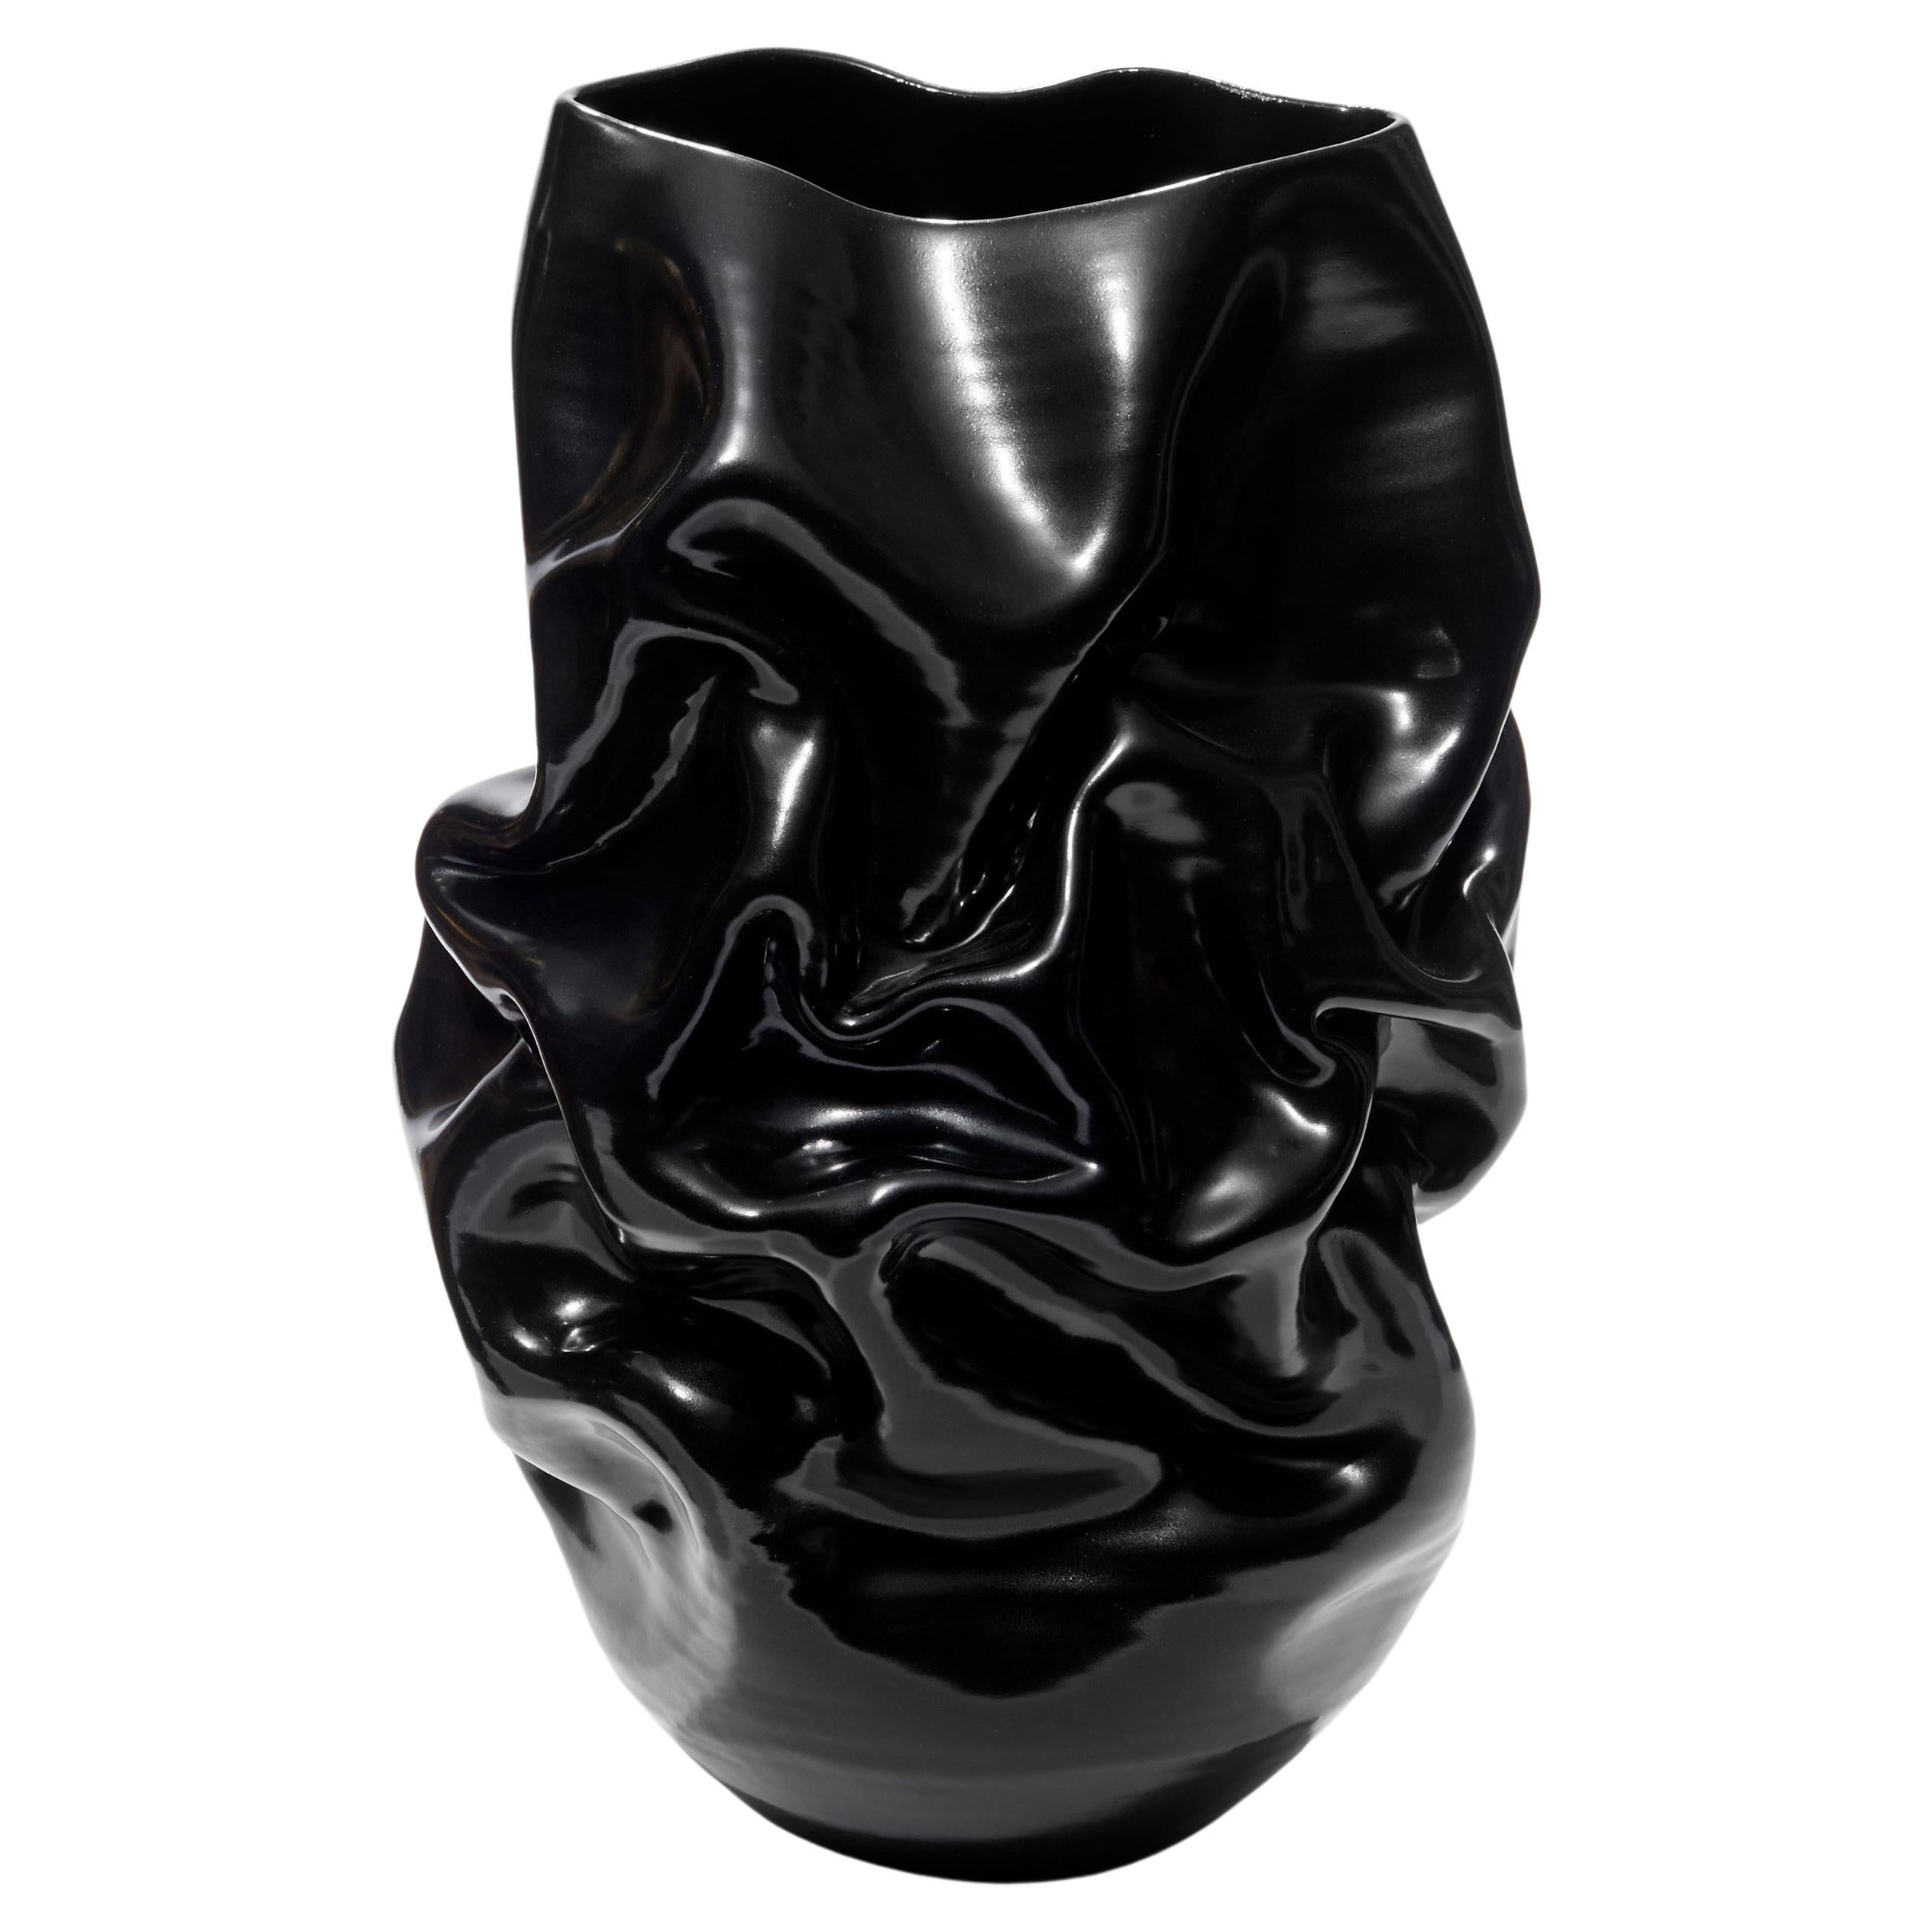  Grand récipient en céramique noir froissé n° 94 de Nicholas Arroyave-Portela